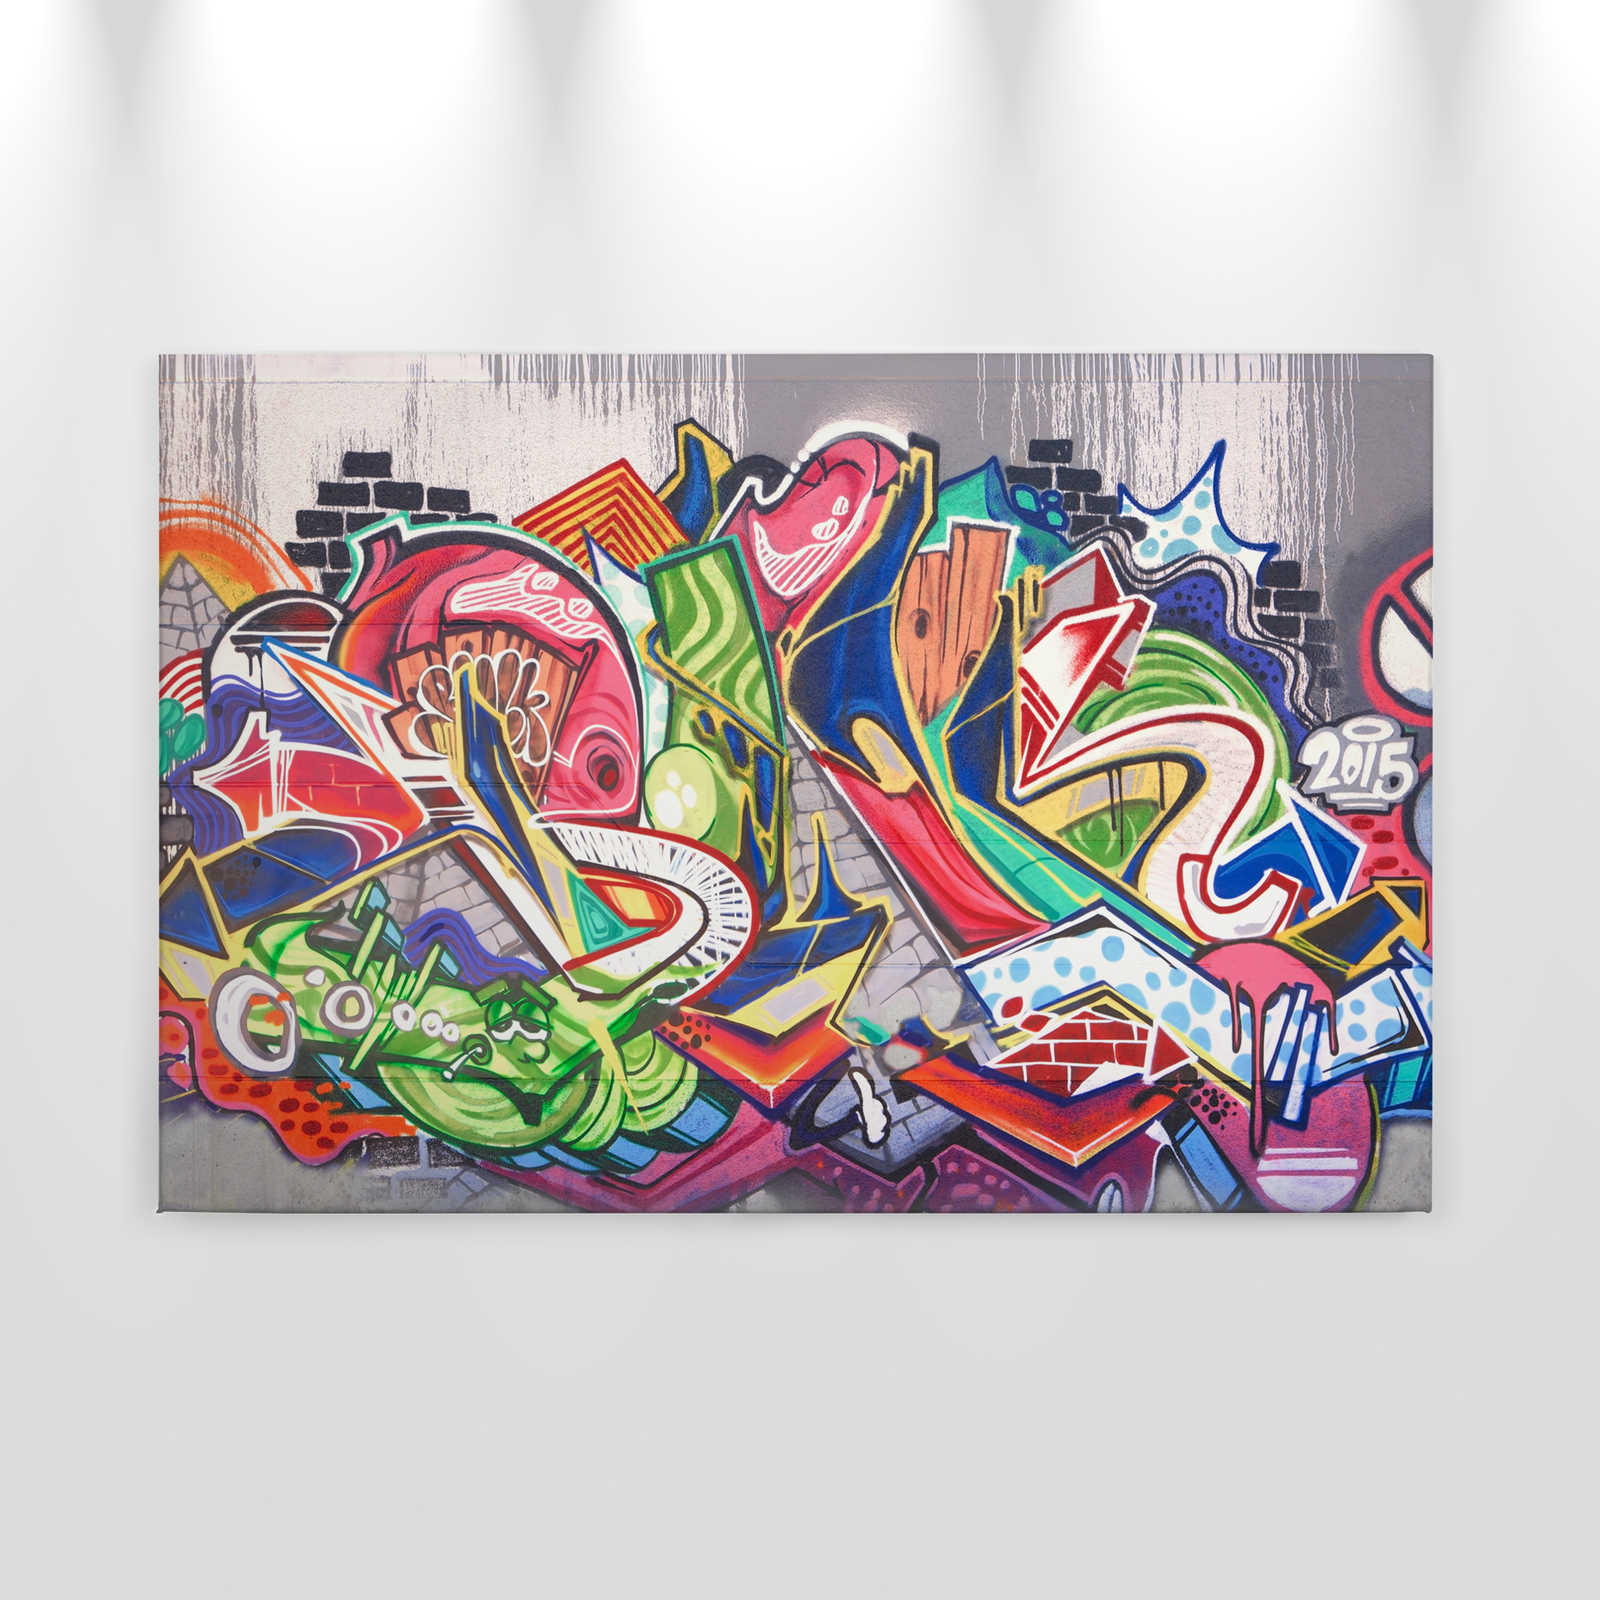             Urban Graffiti Wall Canvas - 0.90 m x 0.60 m
        